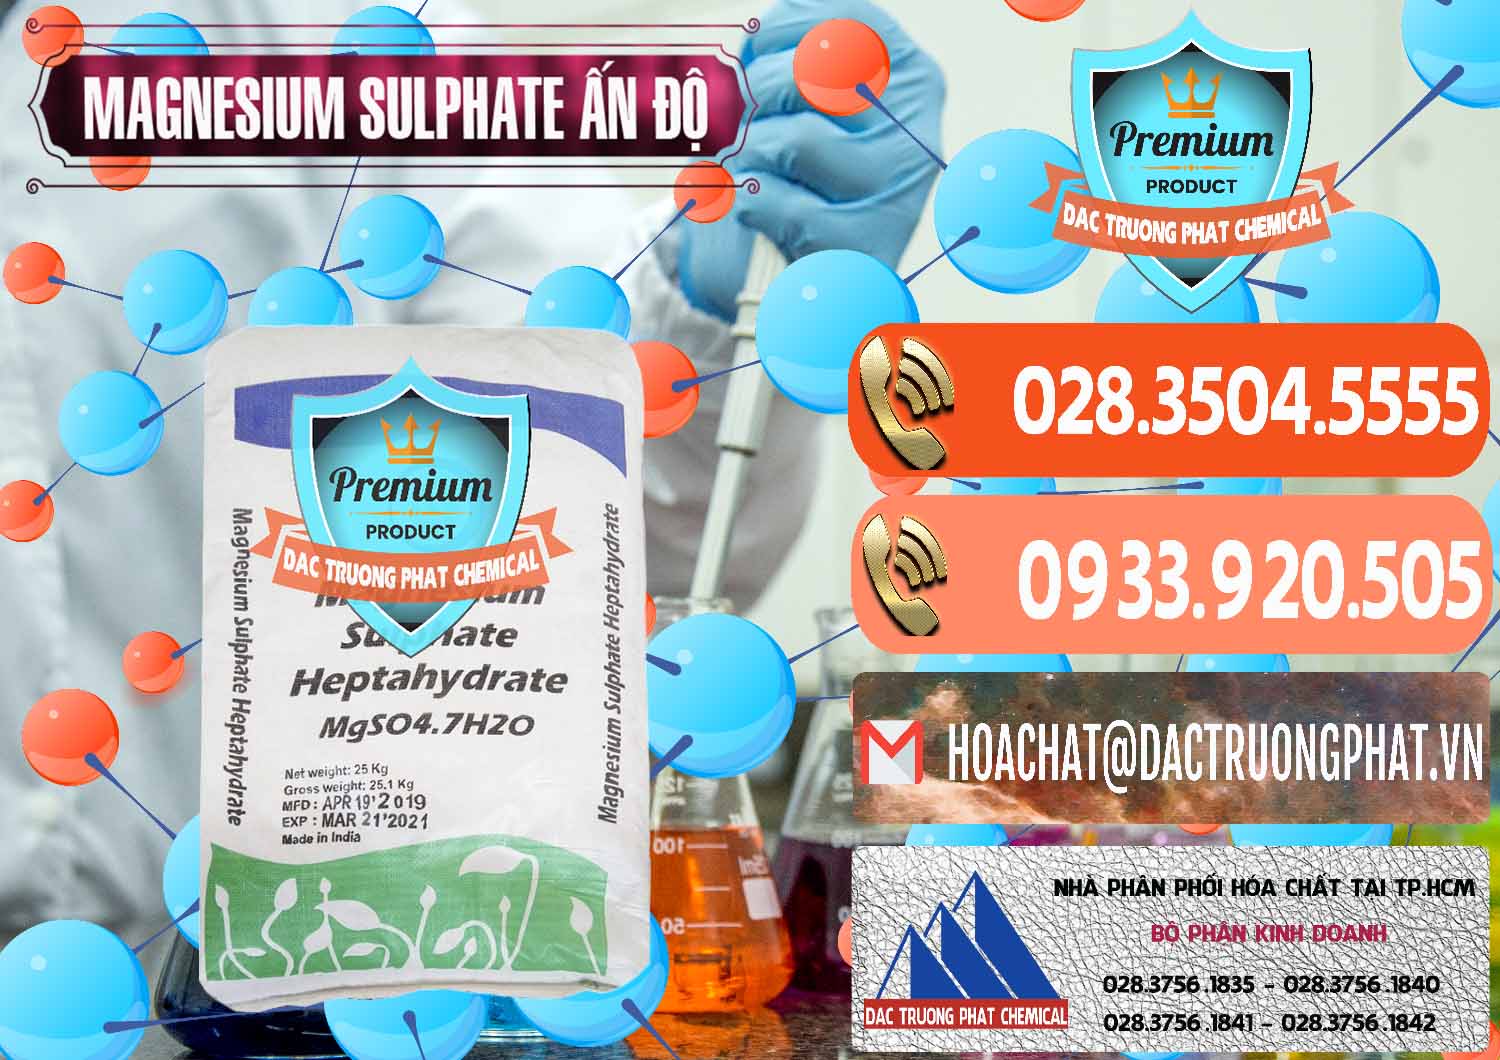 Nơi bán - phân phối MGSO4.7H2O – Magnesium Sulphate Heptahydrate Ấn Độ India - 0362 - Cty kinh doanh & phân phối hóa chất tại TP.HCM - hoachatmientay.com